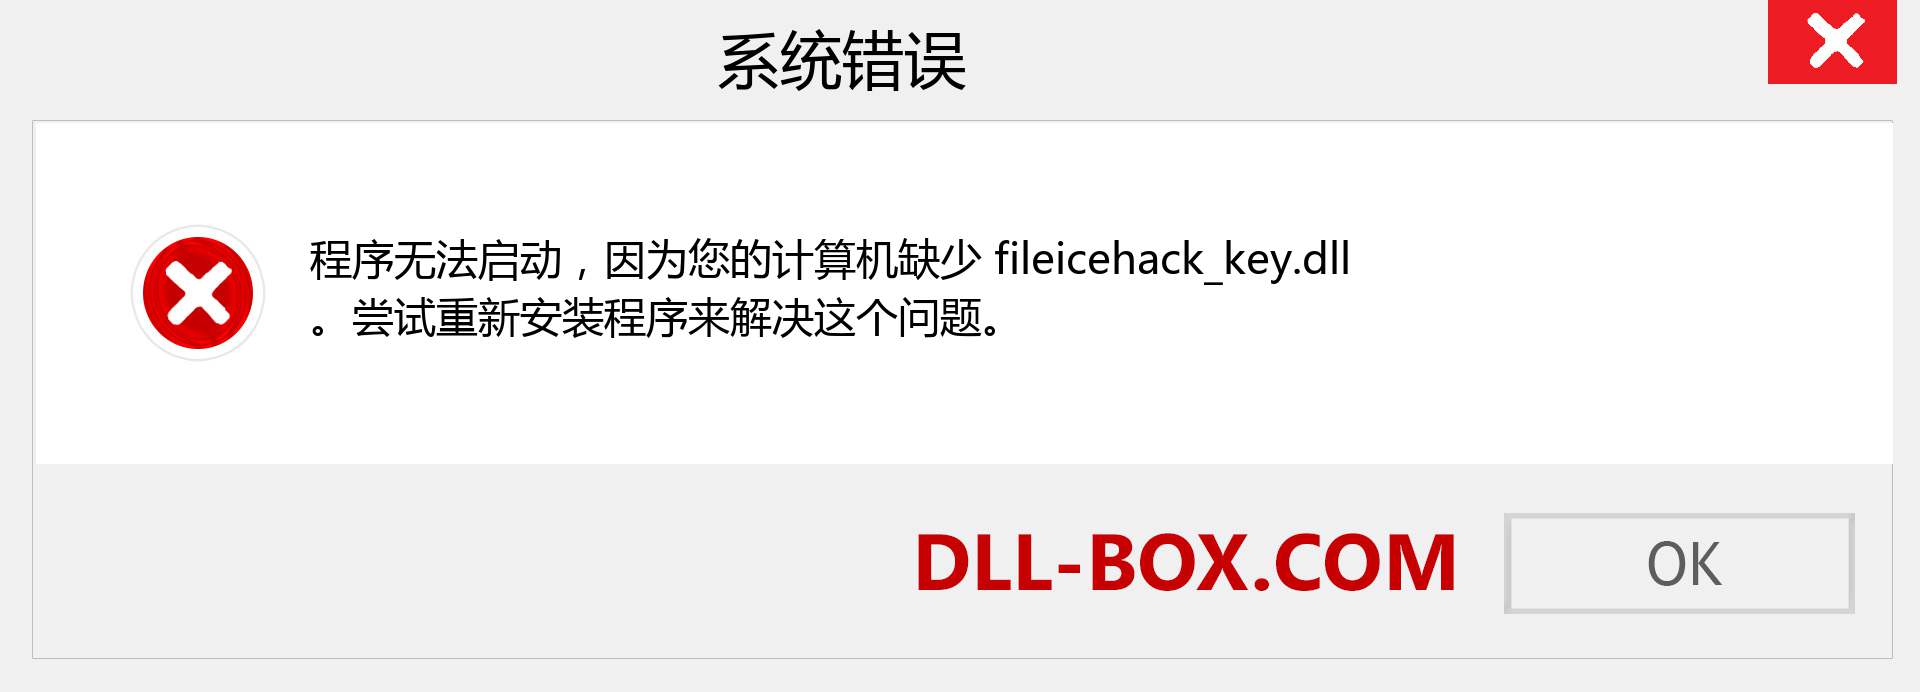 fileicehack_key.dll 文件丢失？。 适用于 Windows 7、8、10 的下载 - 修复 Windows、照片、图像上的 fileicehack_key dll 丢失错误